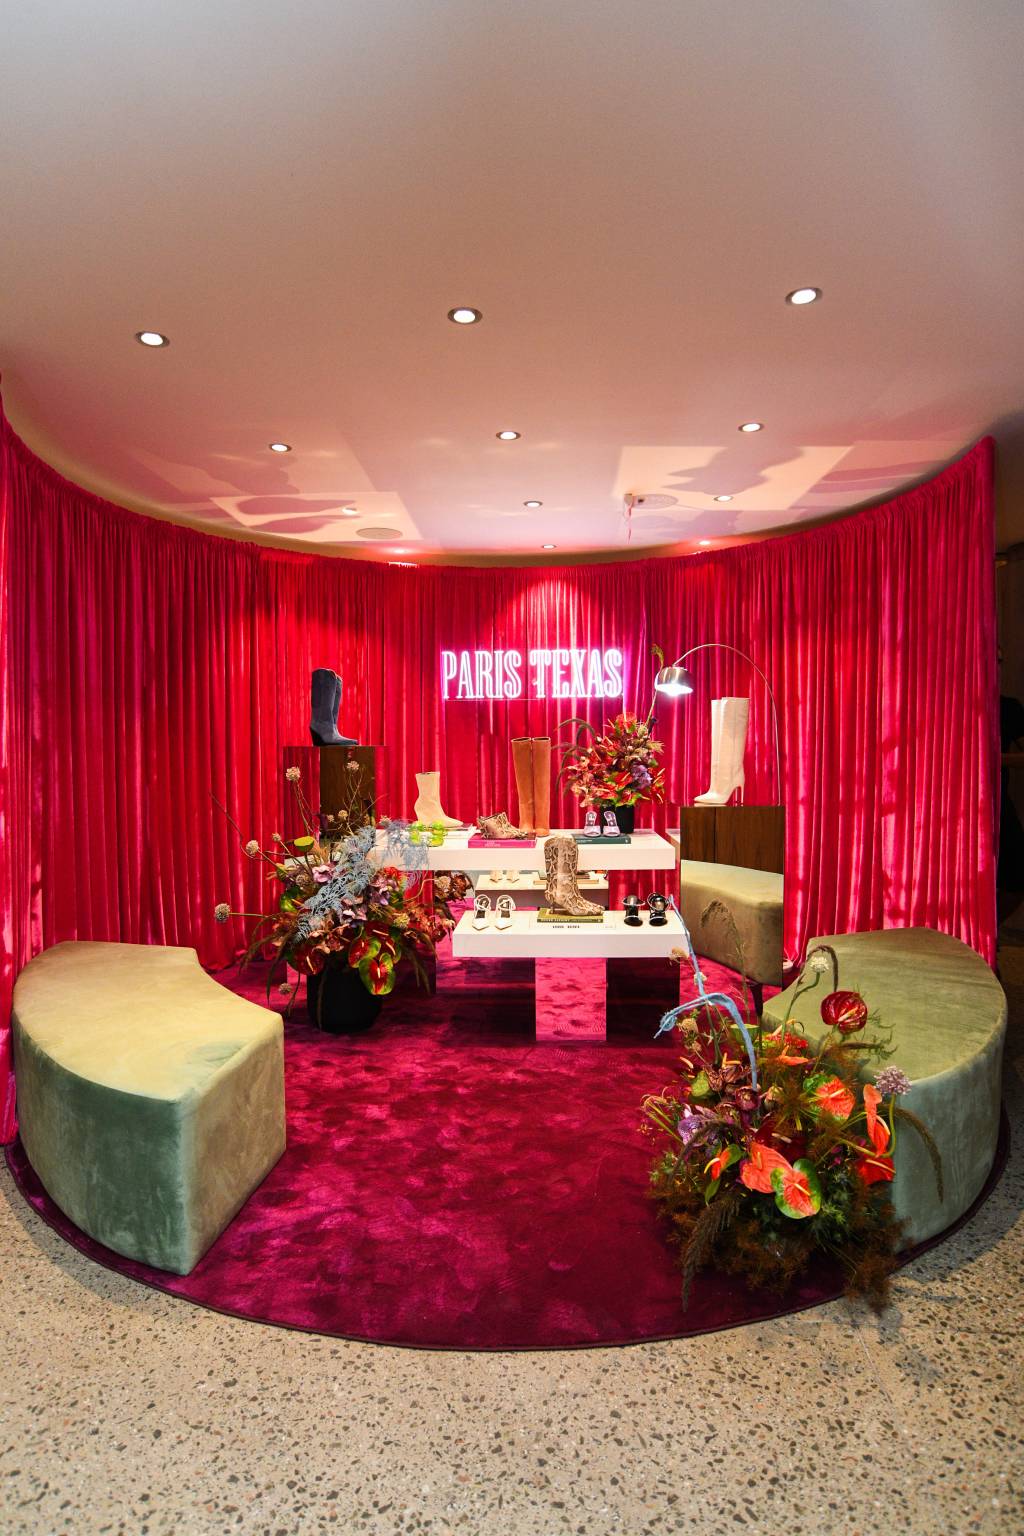 Neon rosa 'Paris Texas' aparece em destaque em frente a cortina de veludo e ilumina algumas bancadas claras e repletas de sapatos e botas.